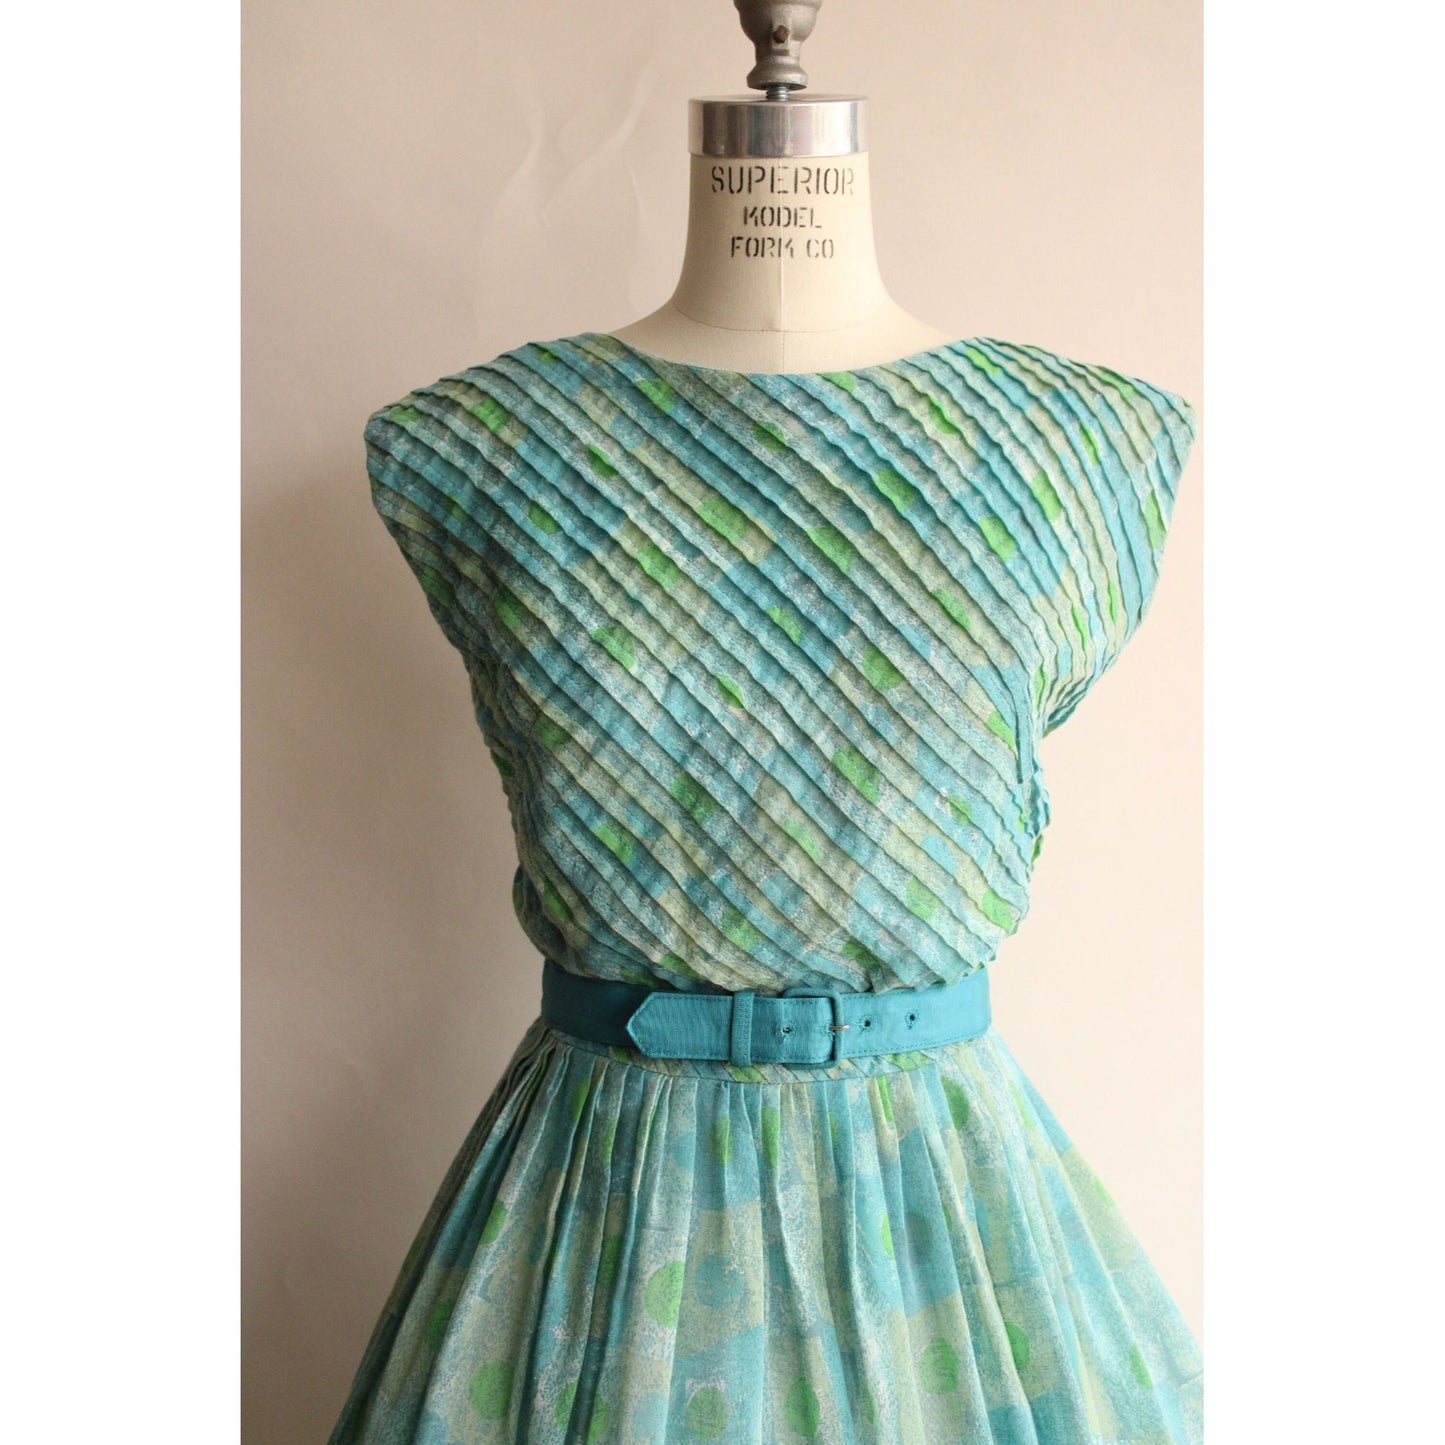 Vintage 1950s Dress with Belt by R&K Originals